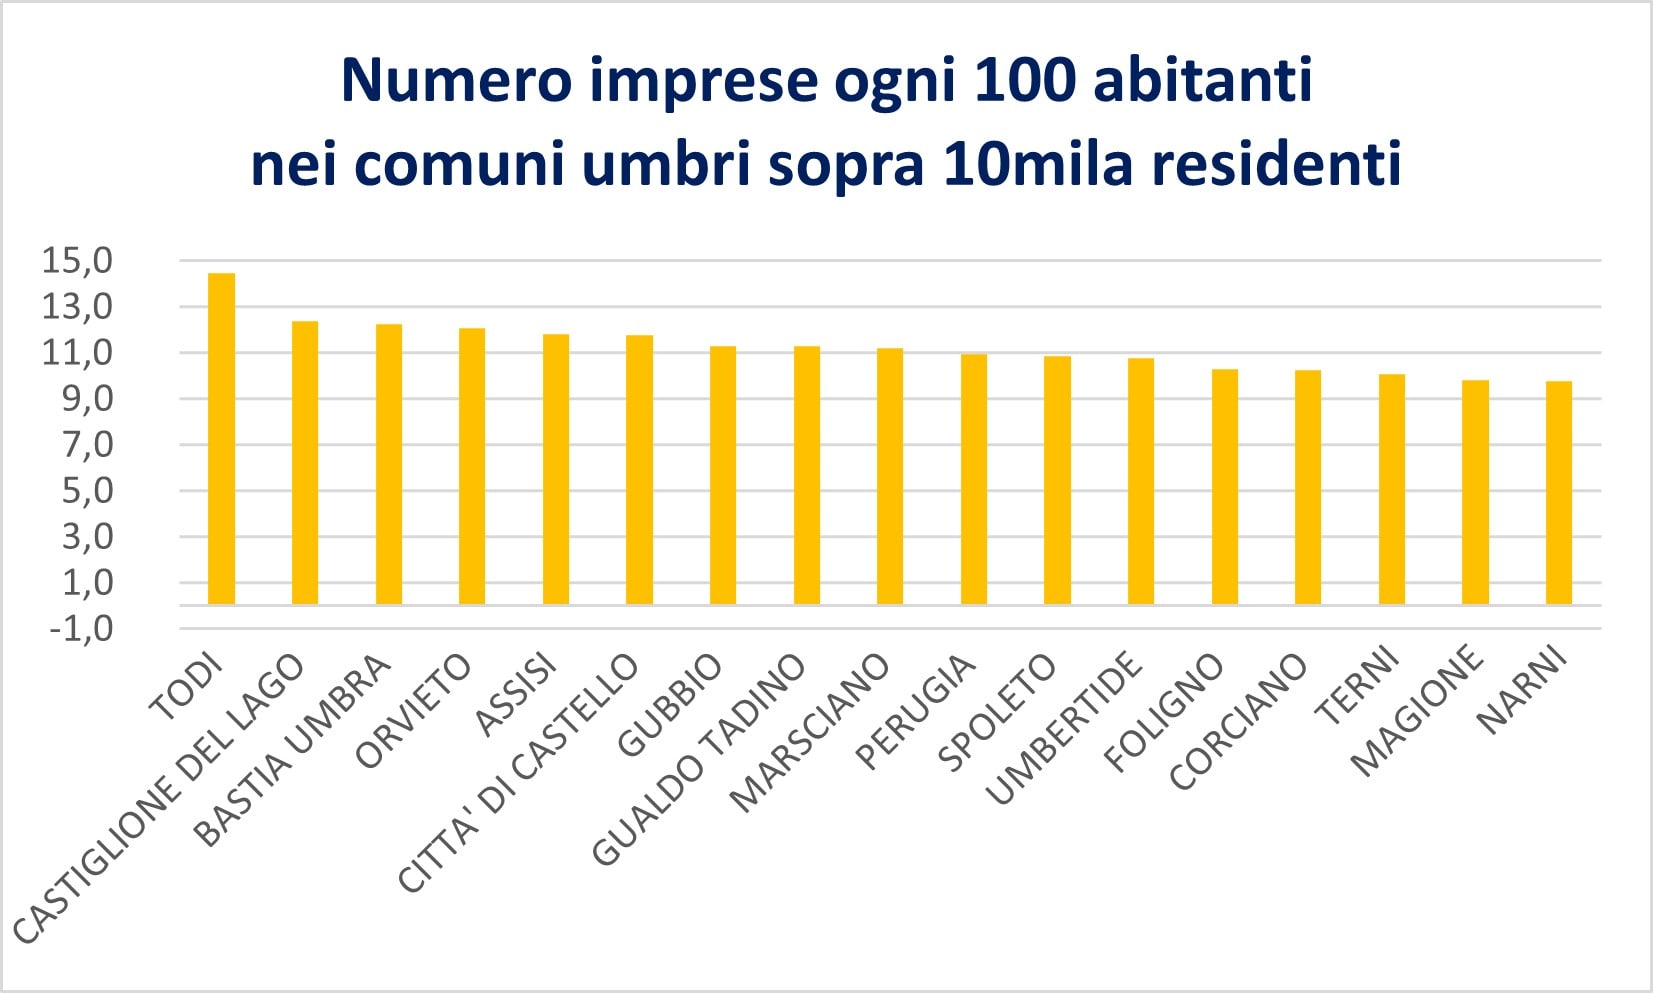 Camera di Commercio Umbria: Todi ai vertici per tasso di imprenditorialità